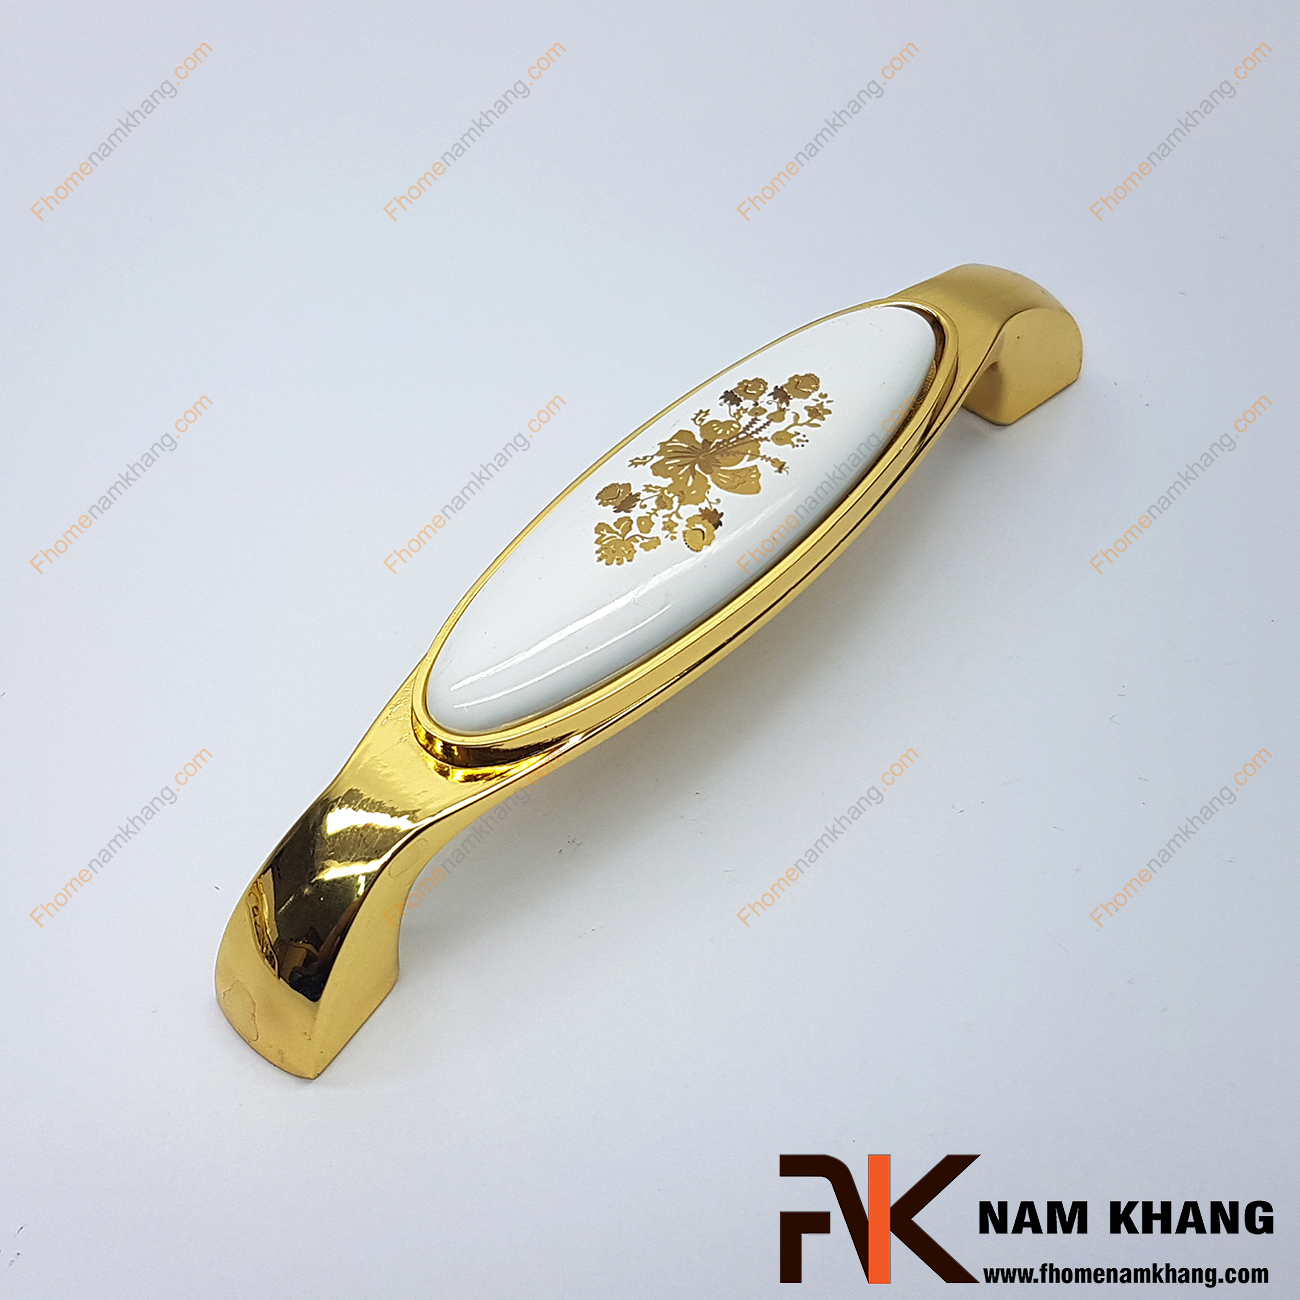 Tay nắm cửa tủ phối sứ mạ vàng NK359-HV với thiết kế bền đẹp và tạo điểm nhấn hoa vàng trên mặt sứ cao cấp, đây là sản phẩm đang được đánh giá cao trong ngành nội thất thẫm mỹ bởi chất lượng và vẻ đẹp thu hút ánh nhìn của nó